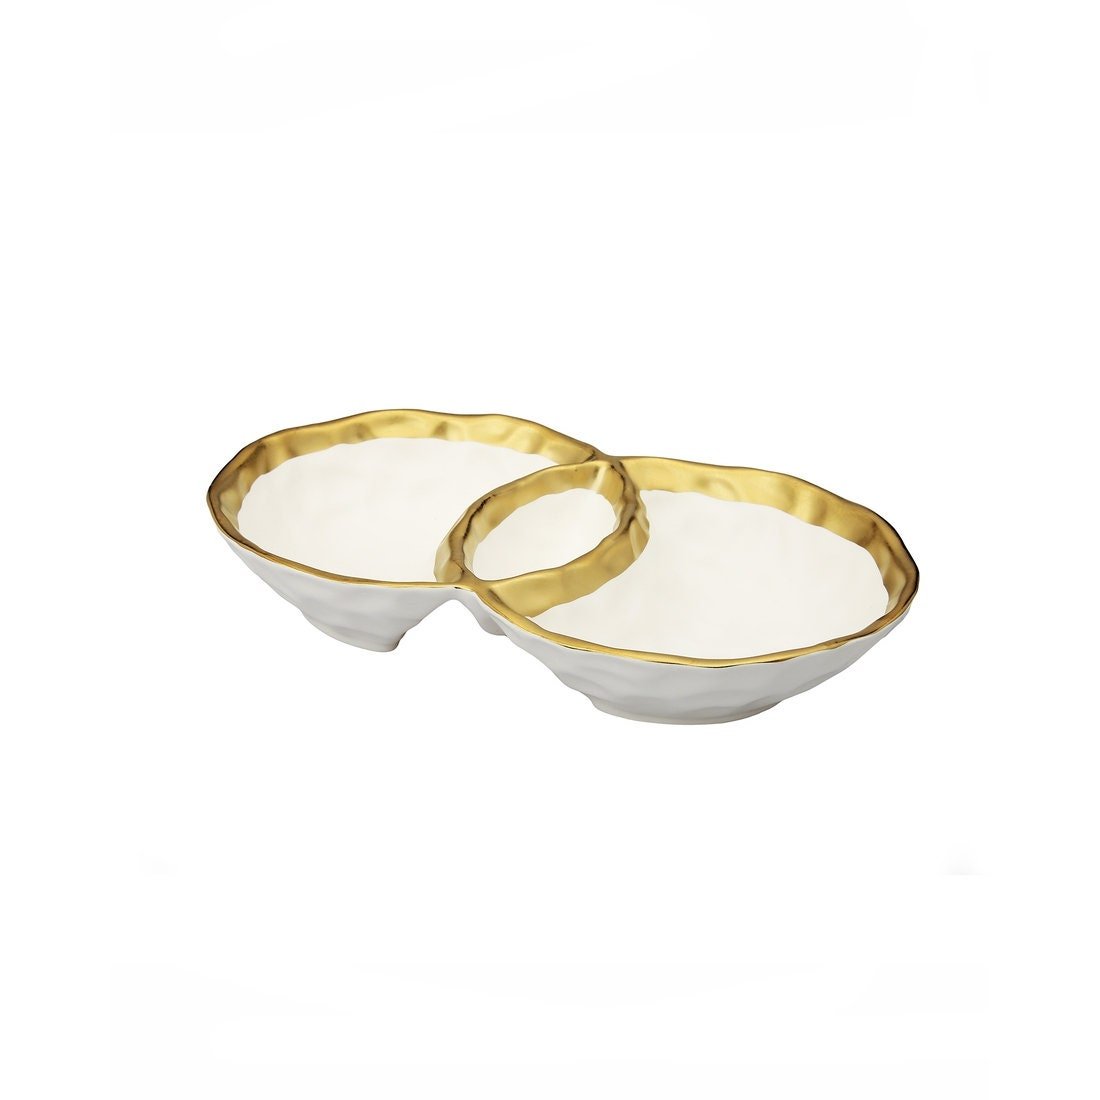 White Porcelain Round Double Bowl with Gold Rim | Table Decor | Gold Bowl - DiamondValeDecor